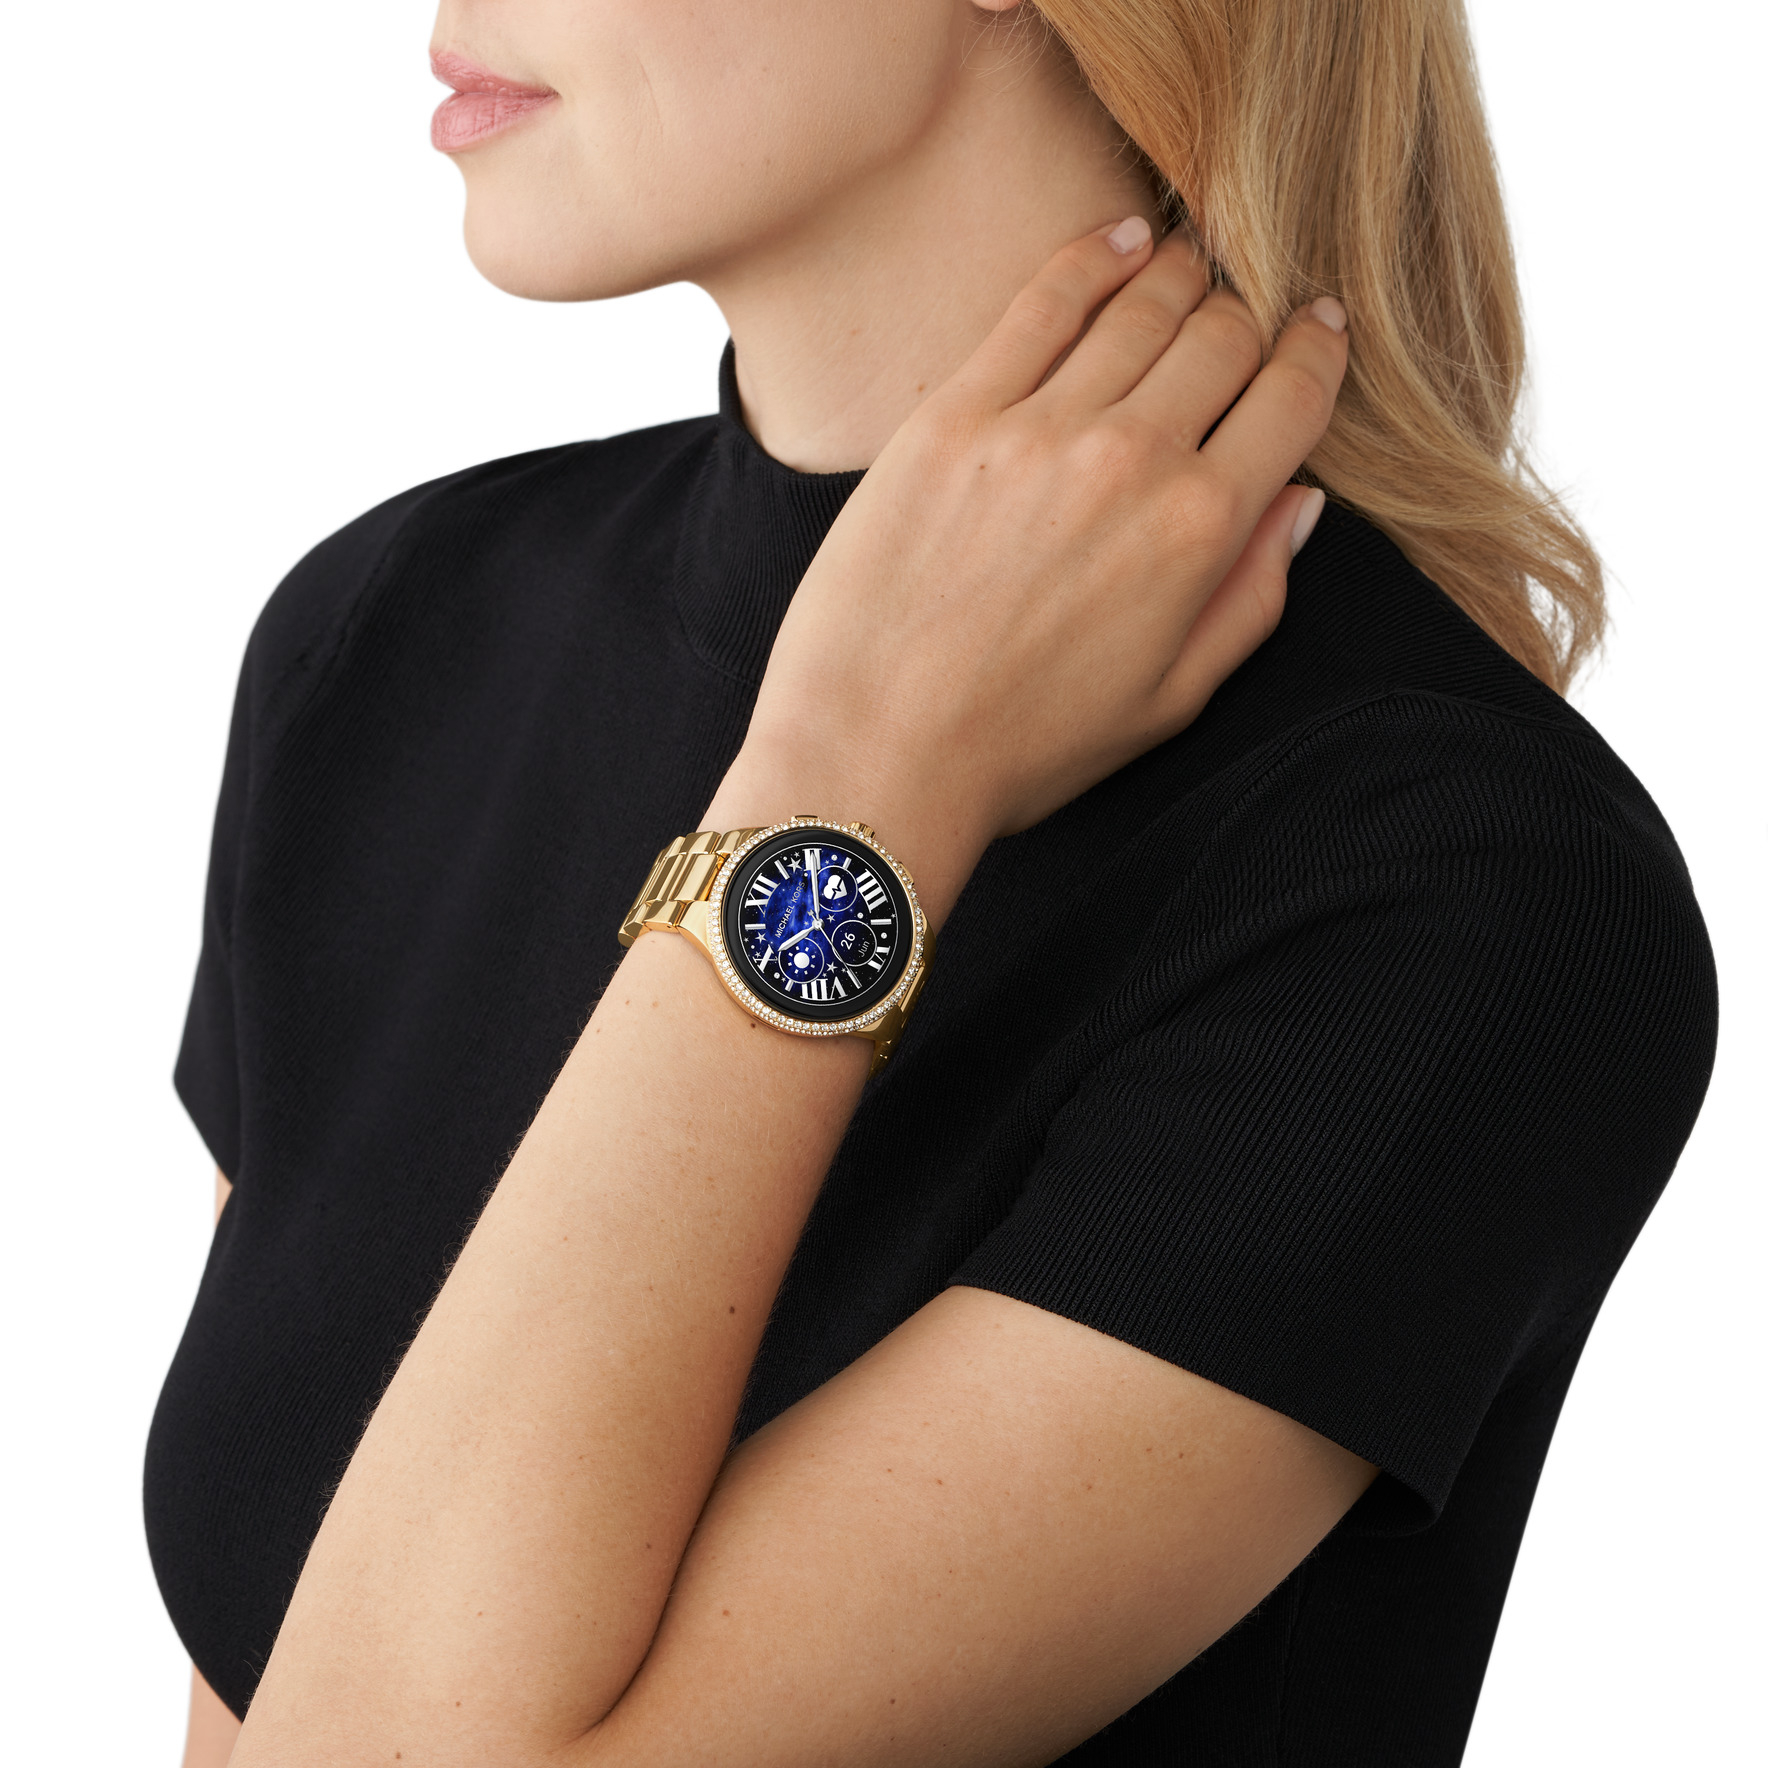 Часы Michael Kors с браслетами  Майкл Корс Оригинал в интернетмагазине с  доставкой по России  Продажа оригинальных женских часов Майкл Корс  цена  заказать коллекция гарантии